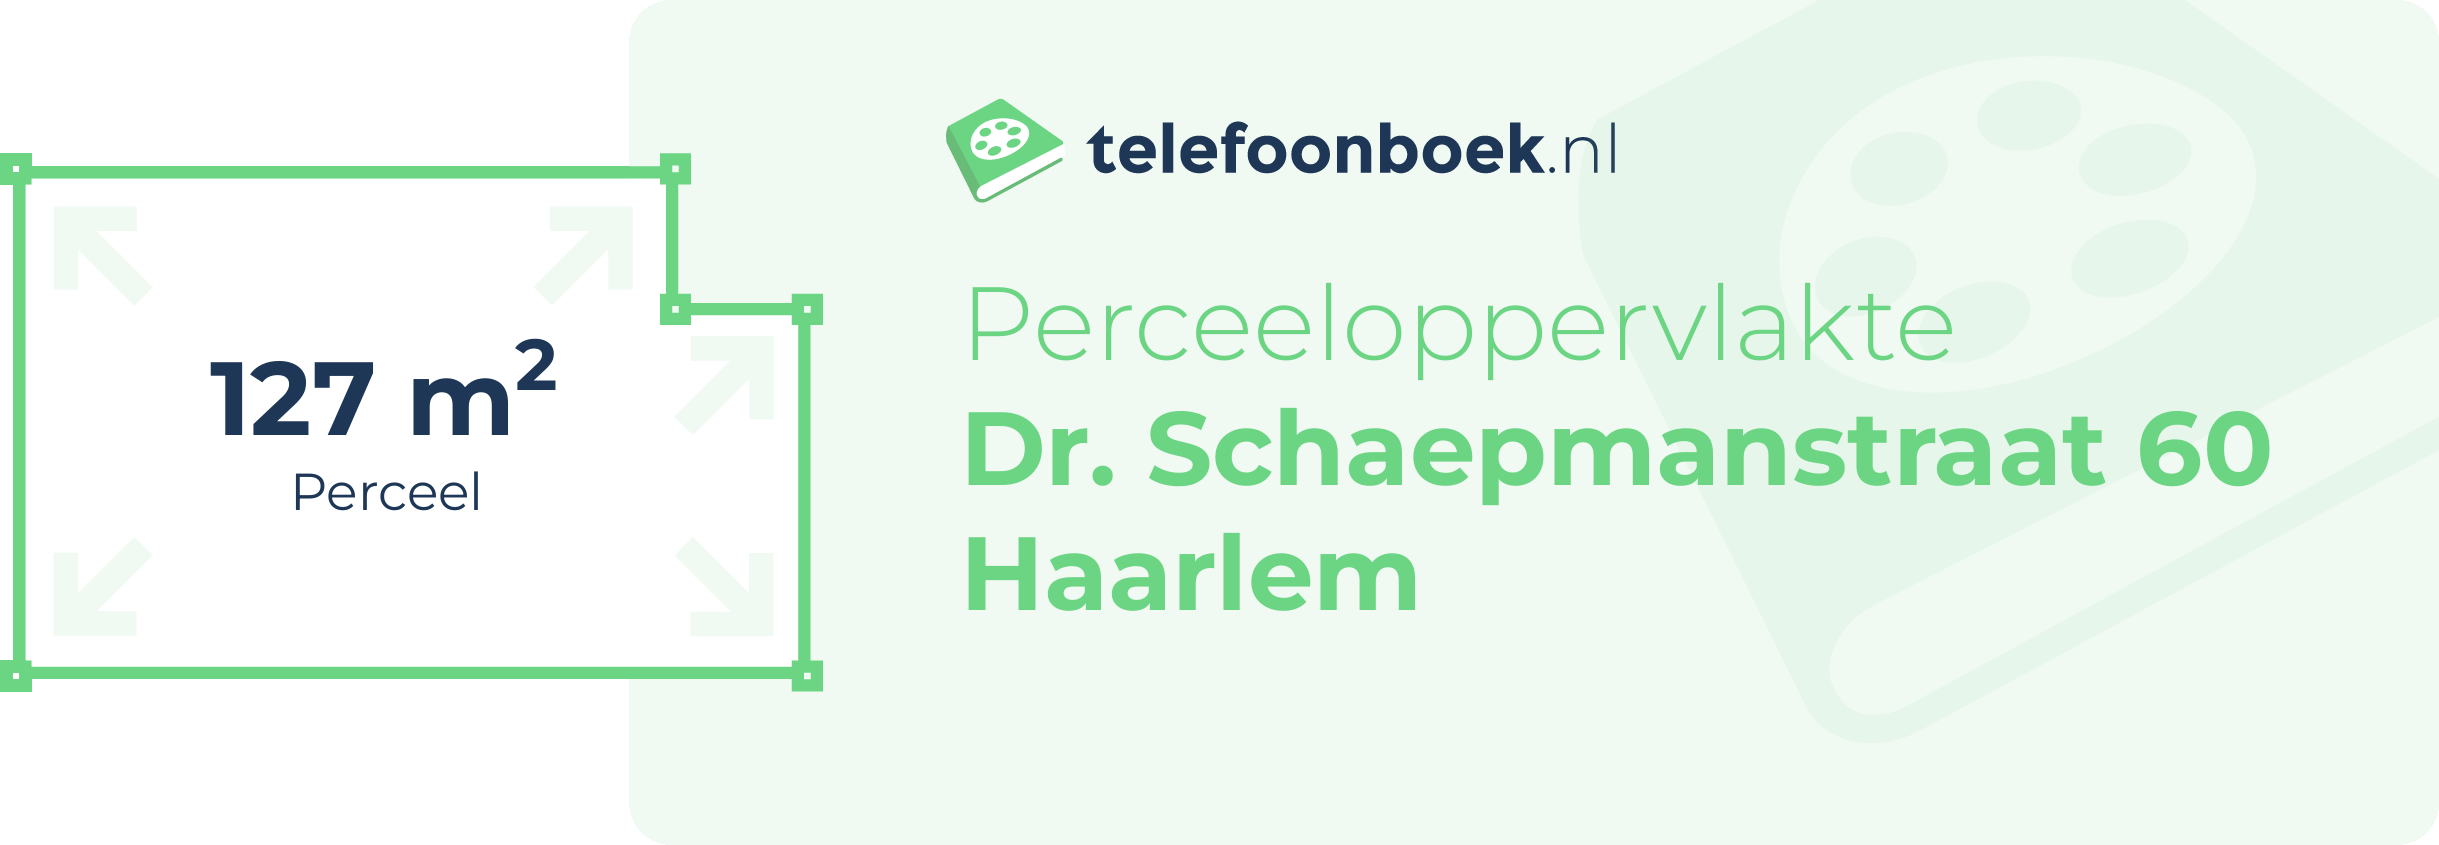 Perceeloppervlakte Dr. Schaepmanstraat 60 Haarlem